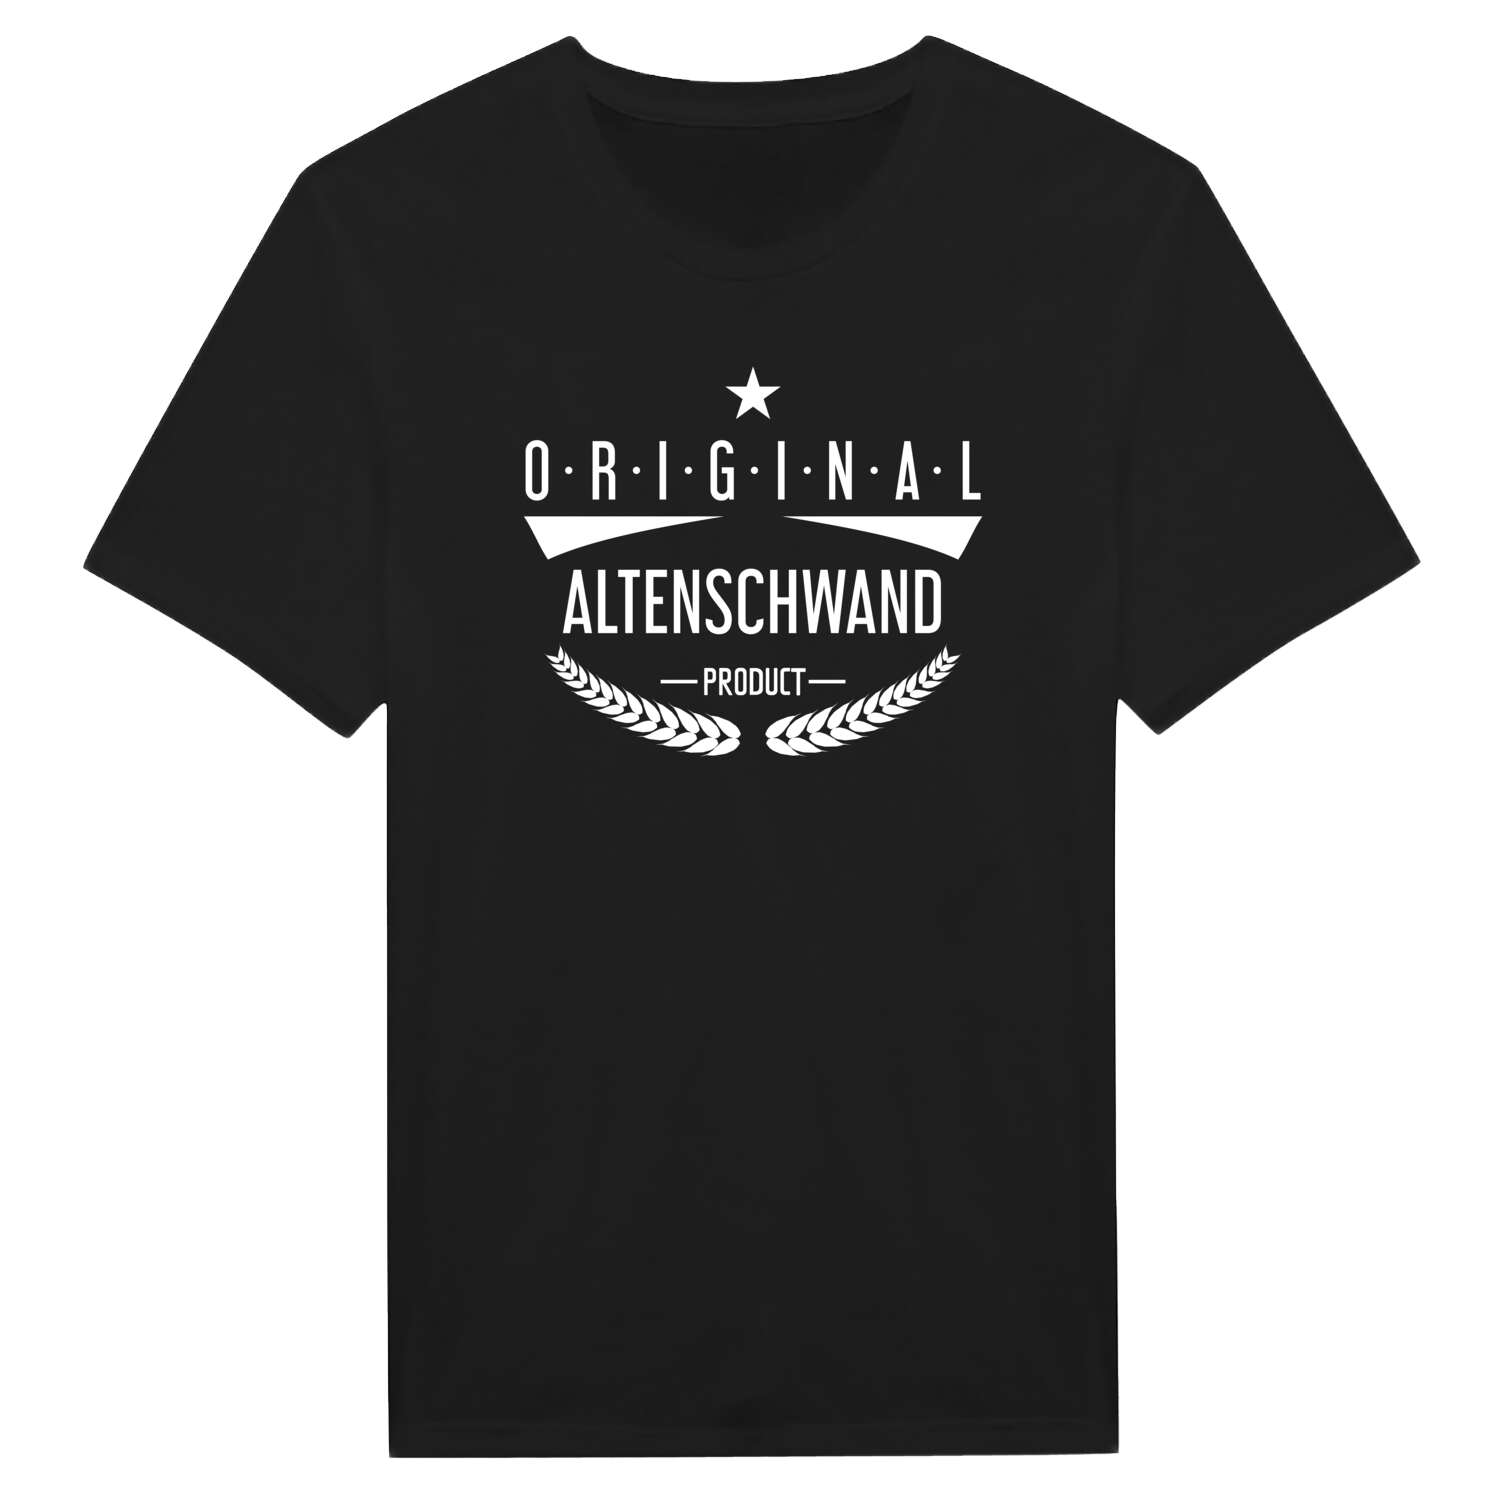 Altenschwand T-Shirt »Original Product«